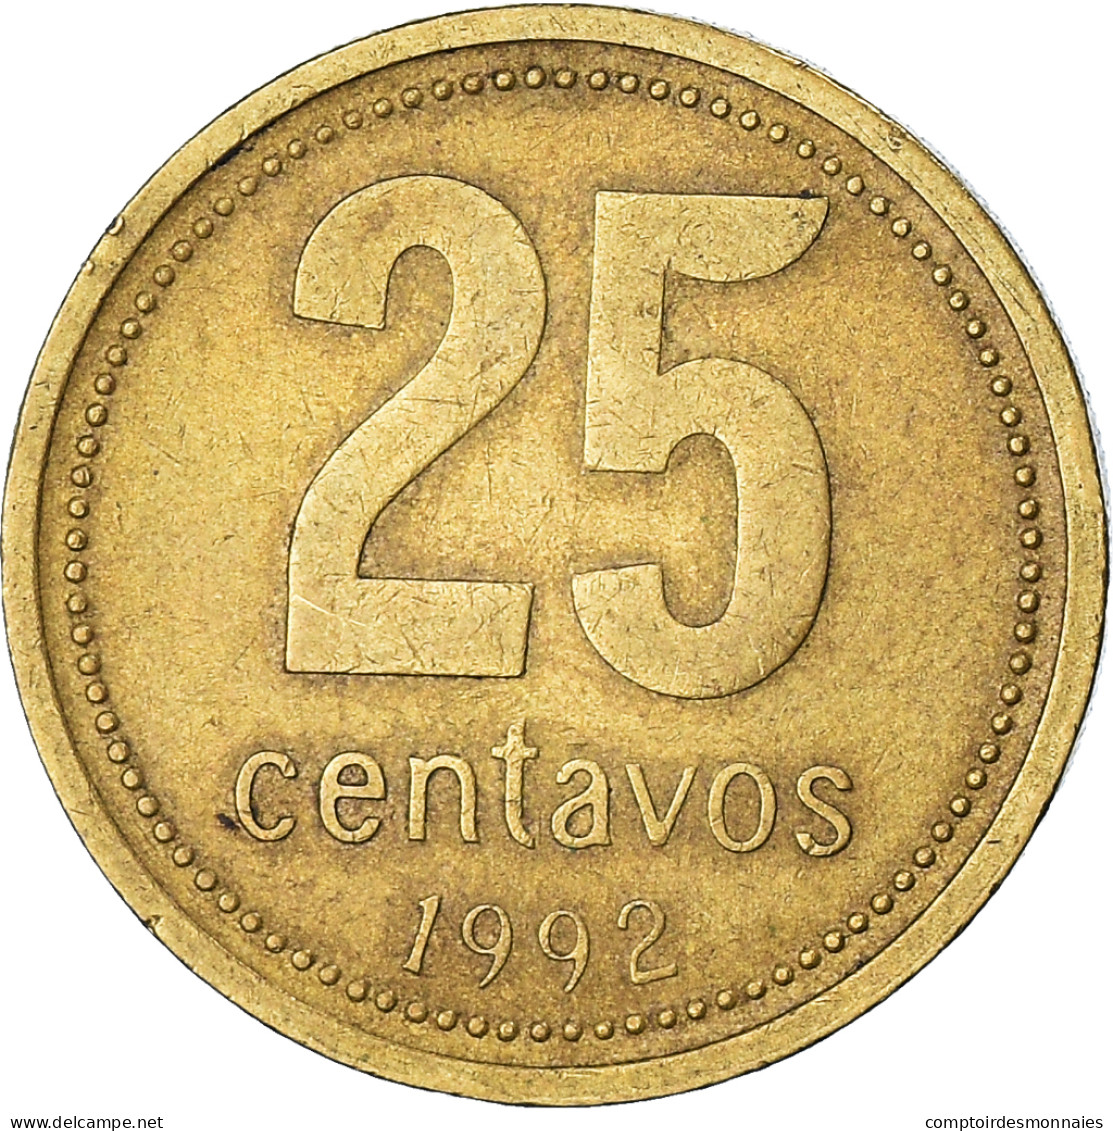 Monnaie, Argentine, 25 Centavos, 1992 - Argentine